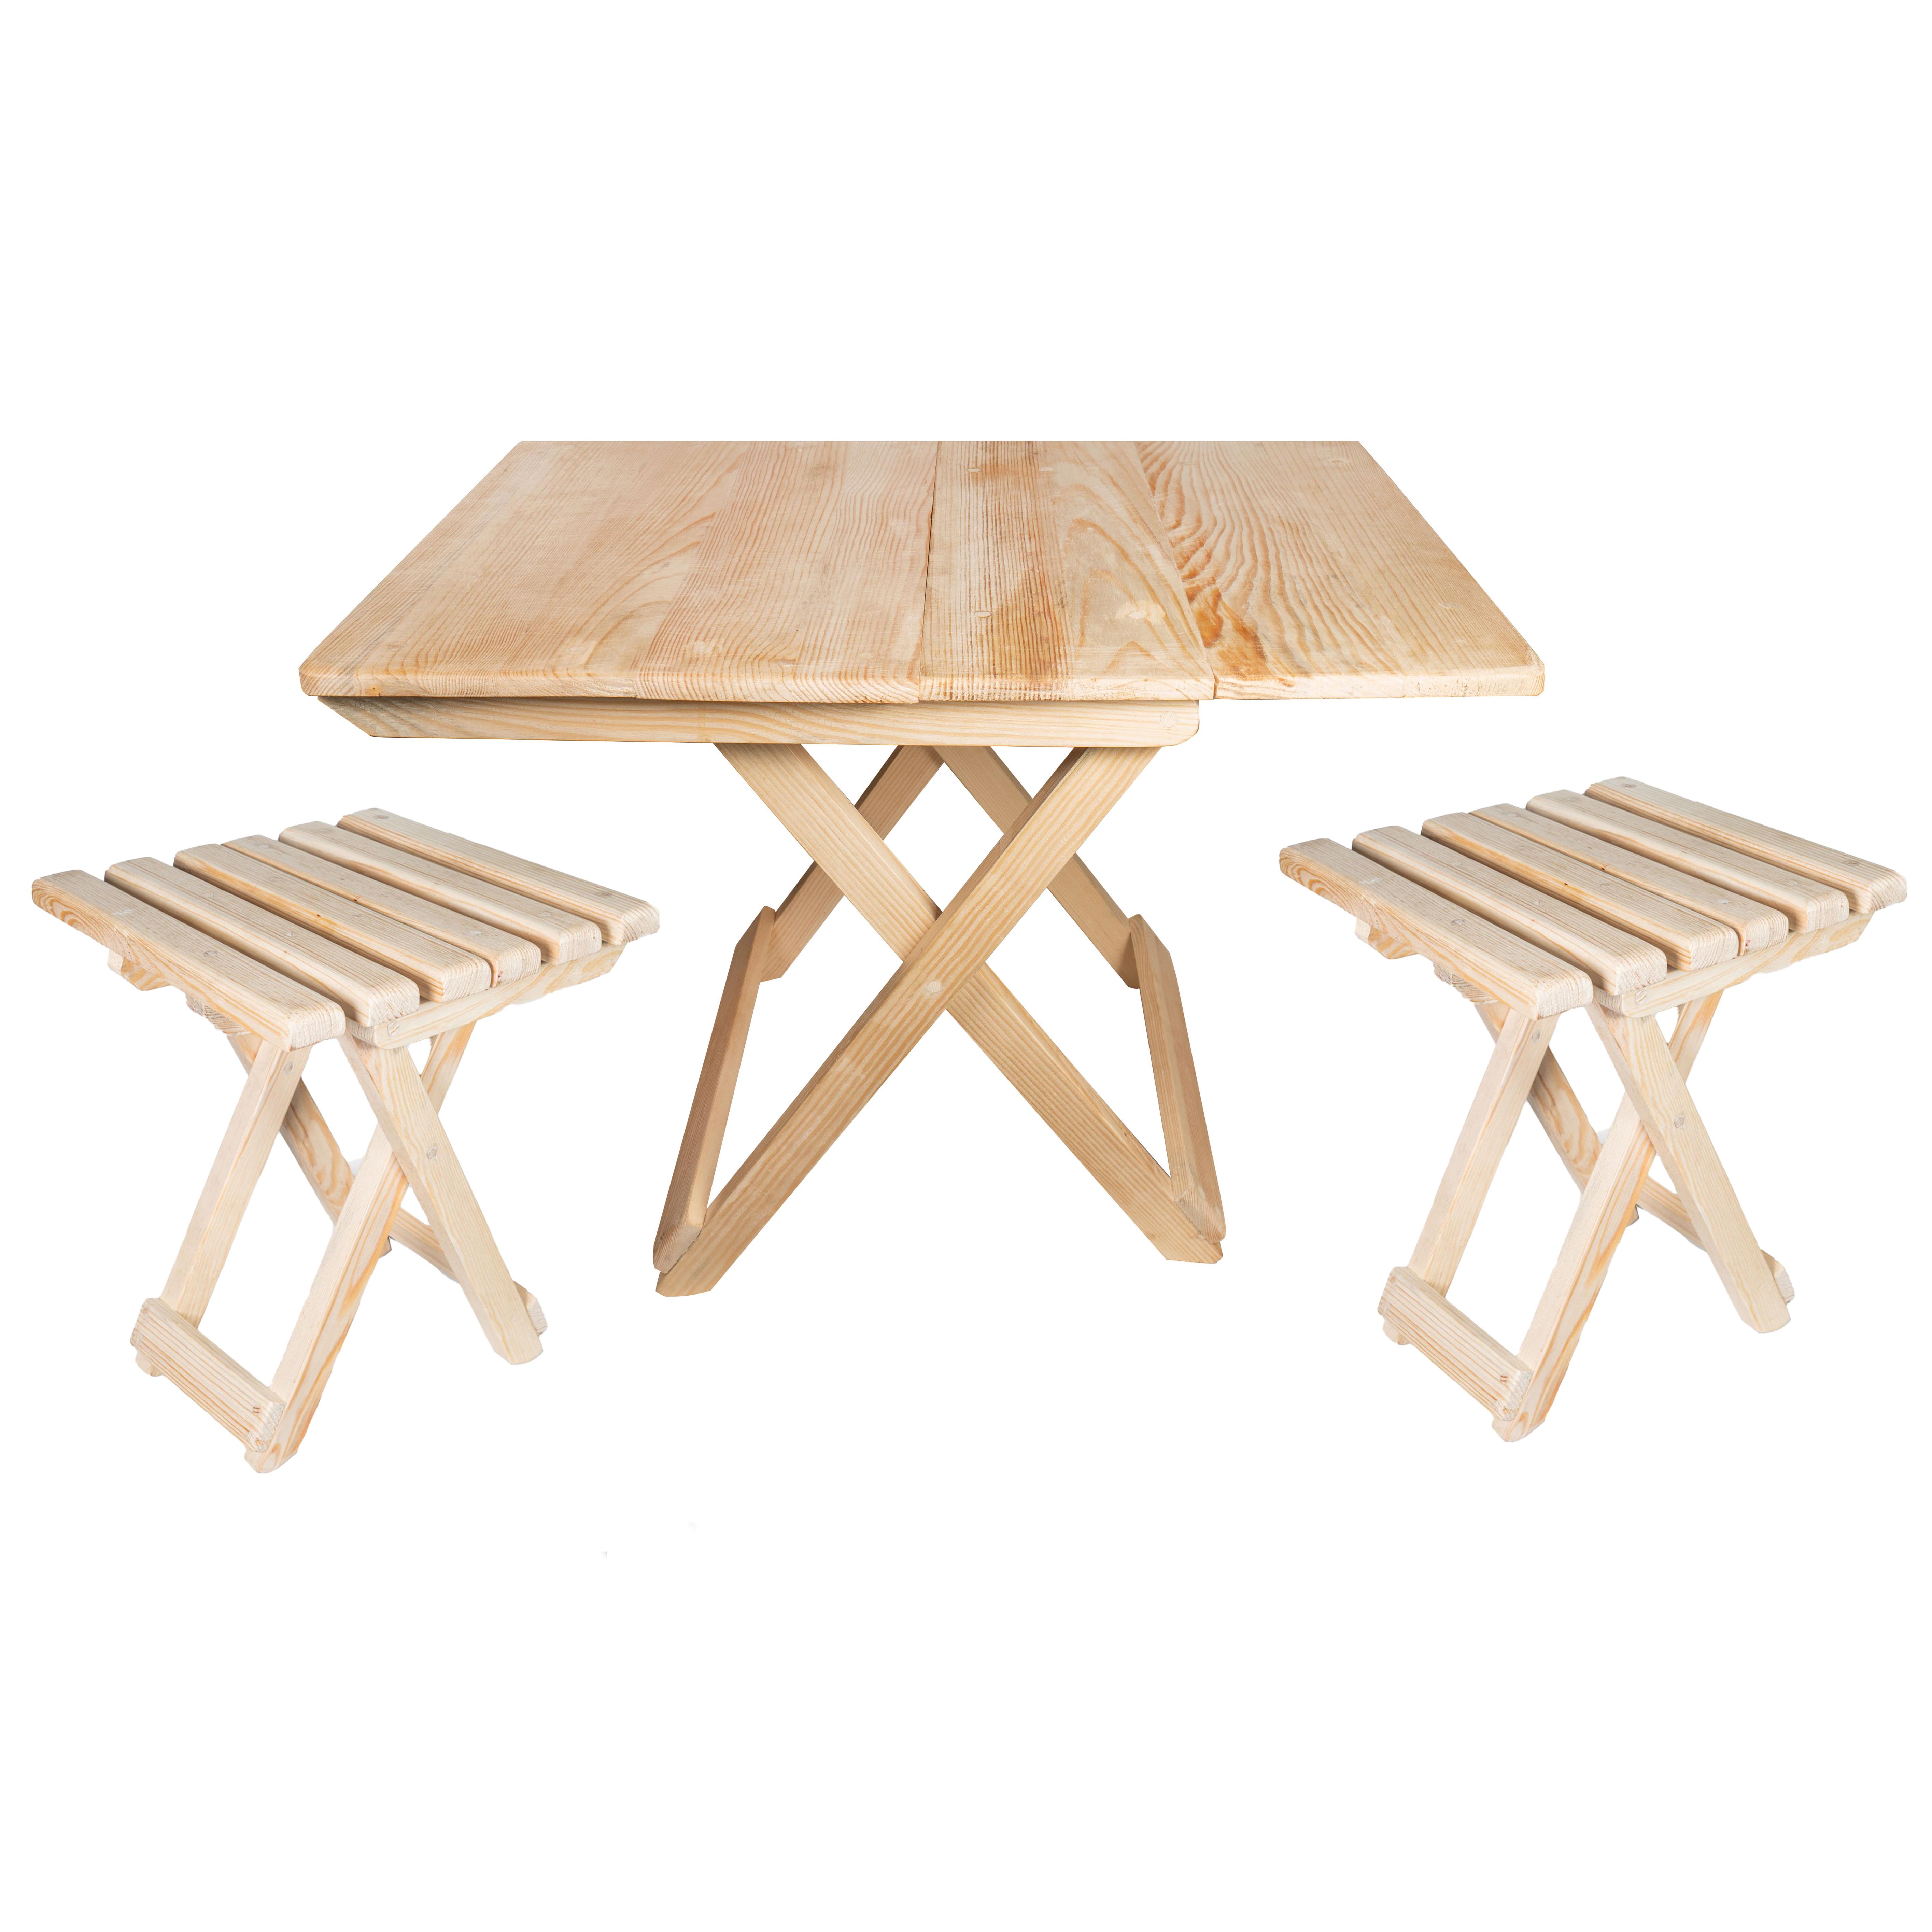 Мебель из дерева для любых задач и целей. Стулья, столы, табуретки. Шкафы и комоды